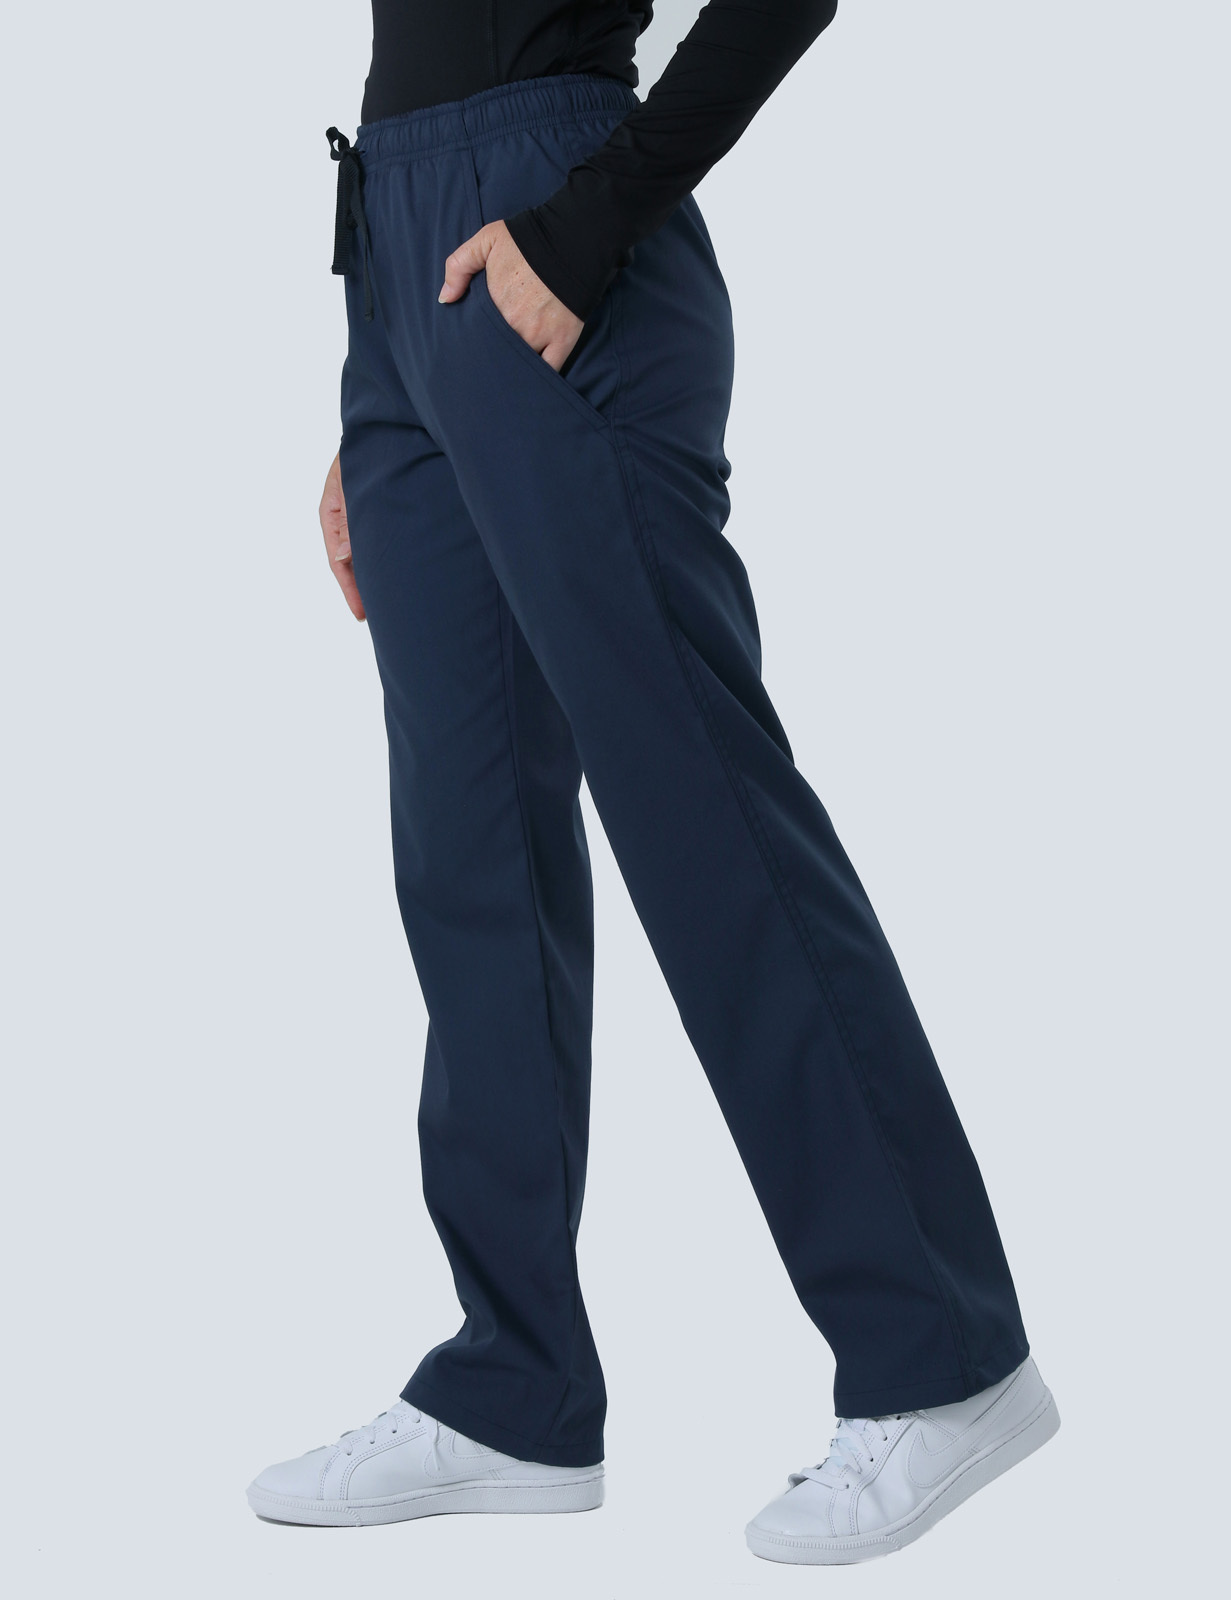 Women's Regular Cut Pants - Navy - XX Small